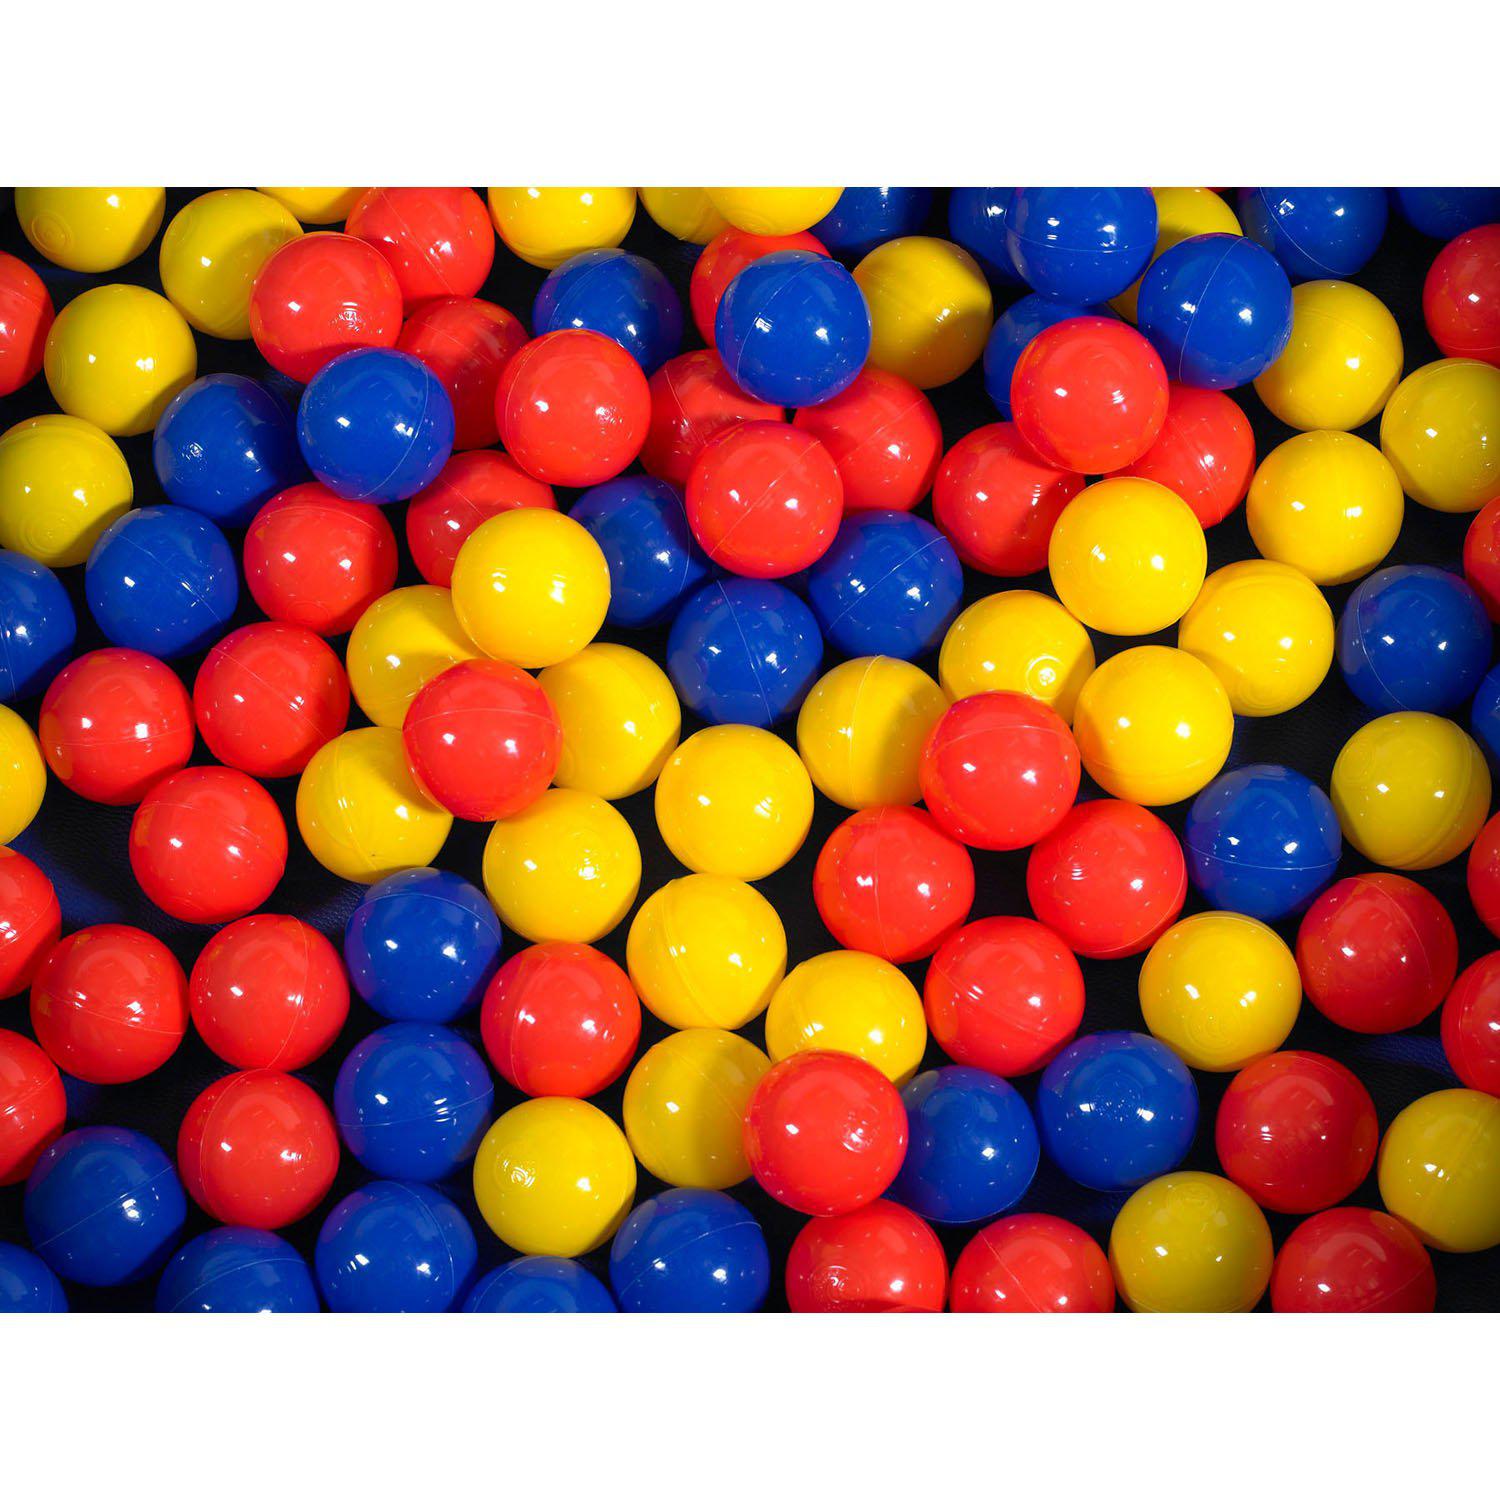 500 Mixed Color Balls